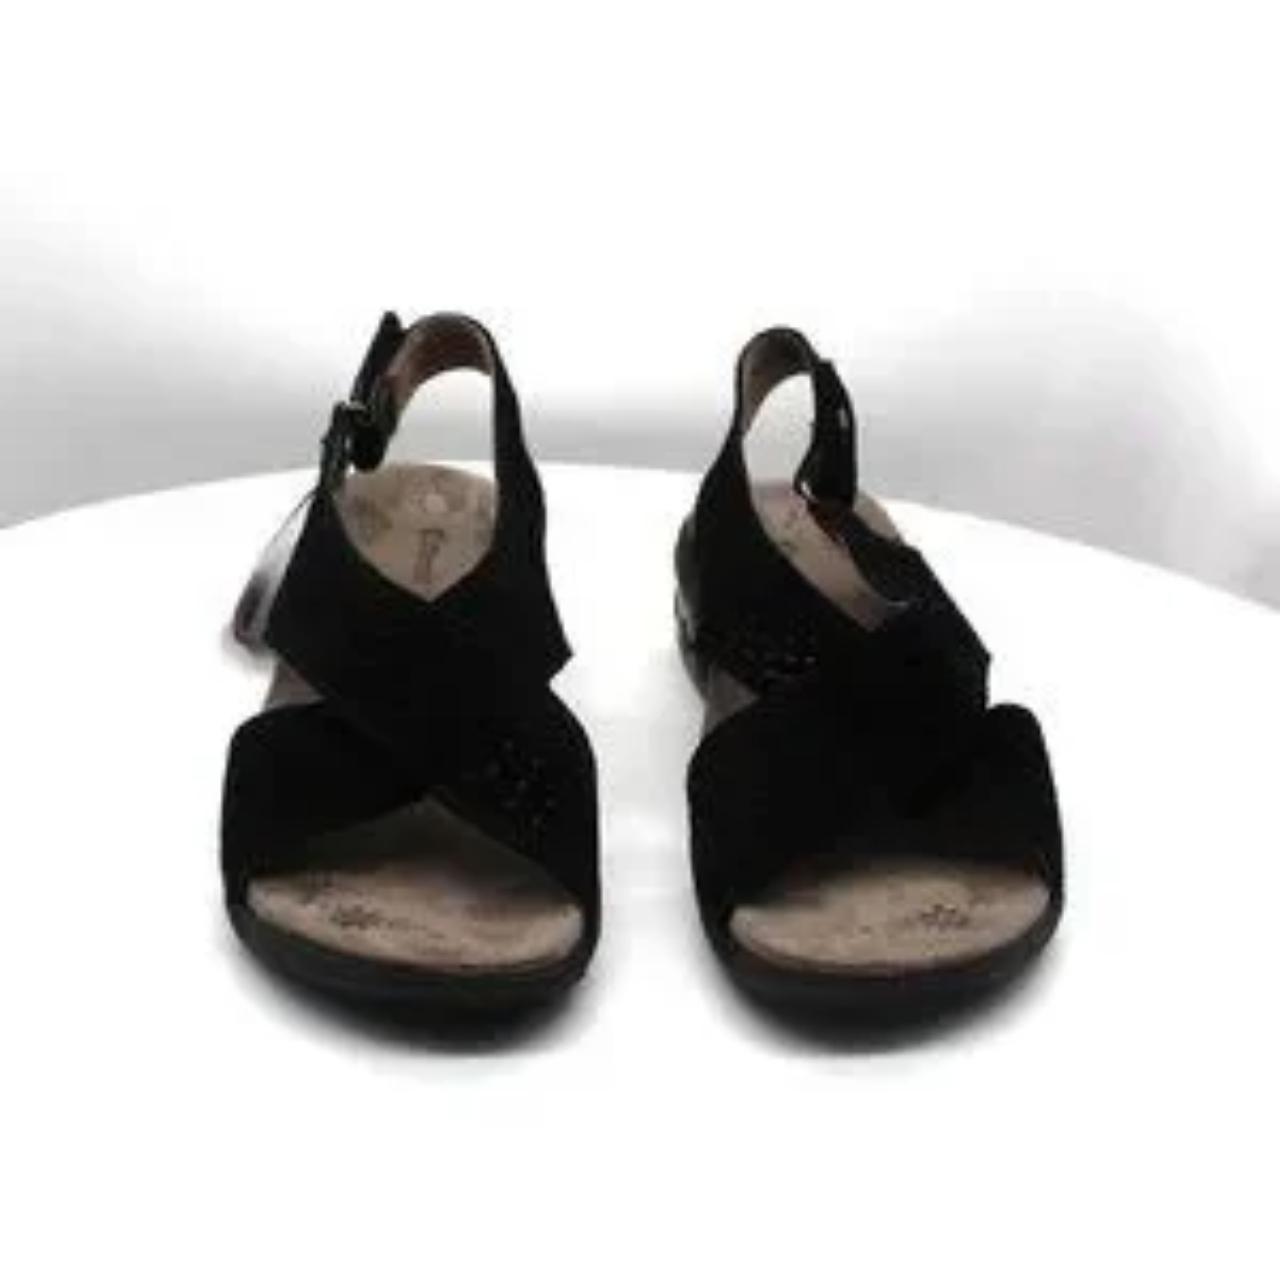 Therafit Shoe Olivia Adjustable Cross Strap Sandal... - Depop